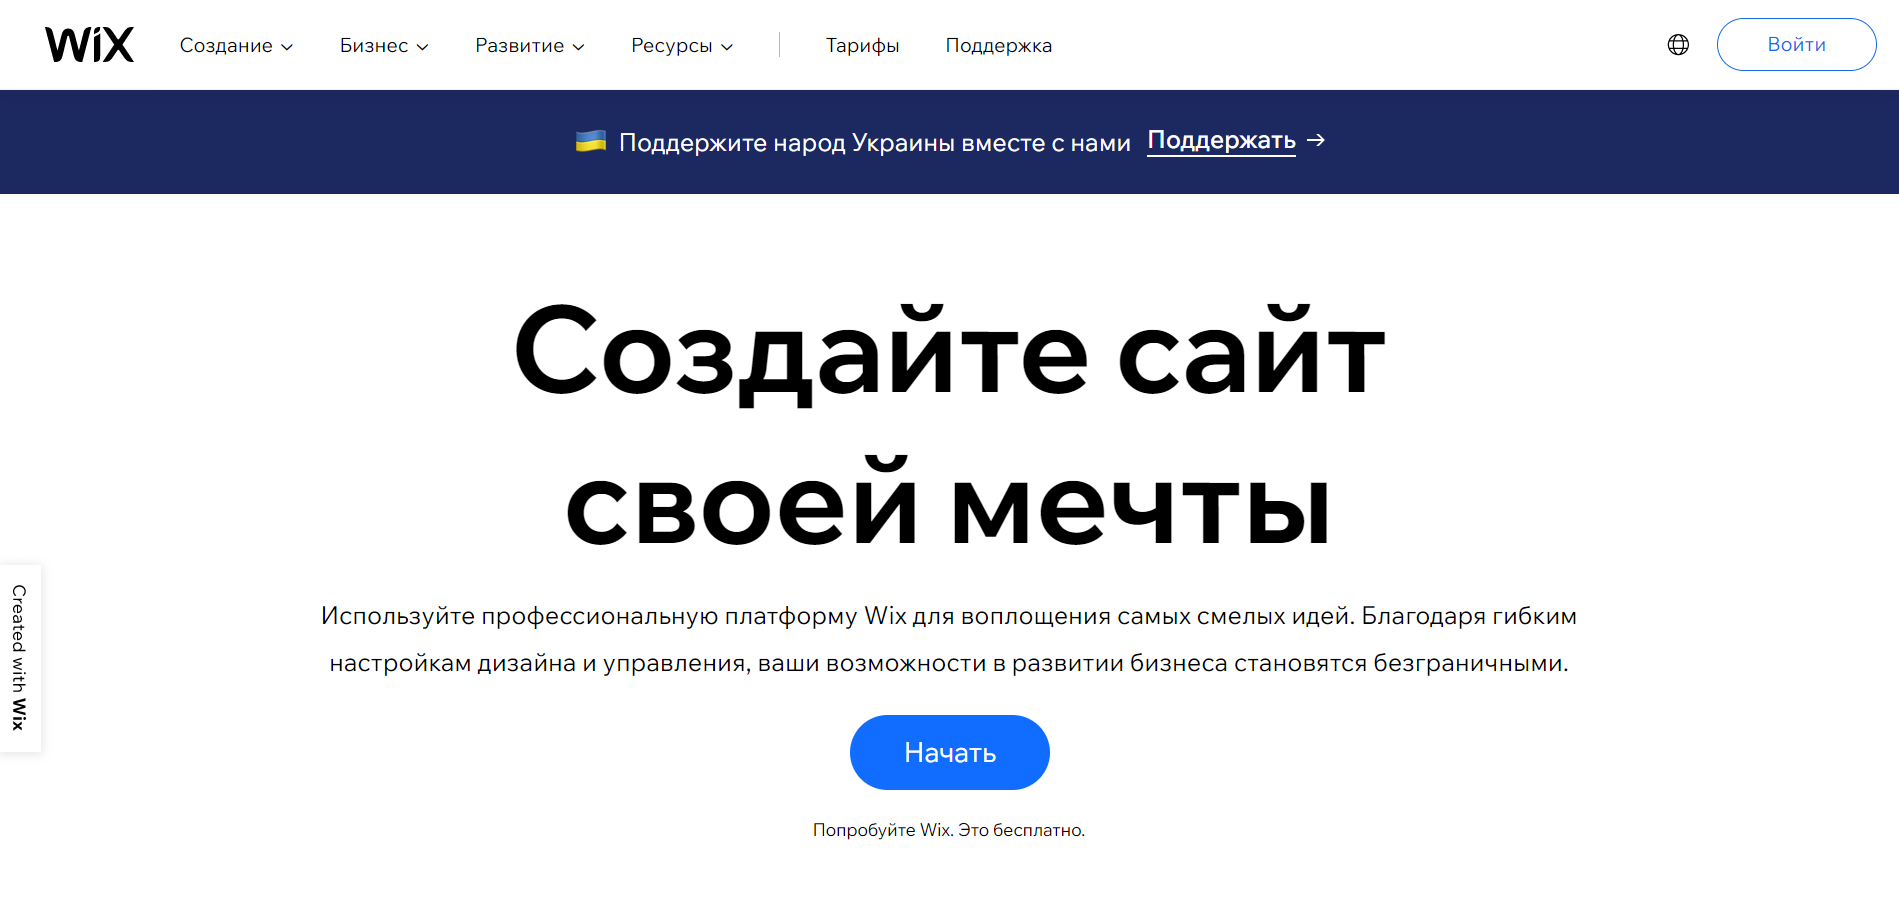 Как открыть сайт Wix в России